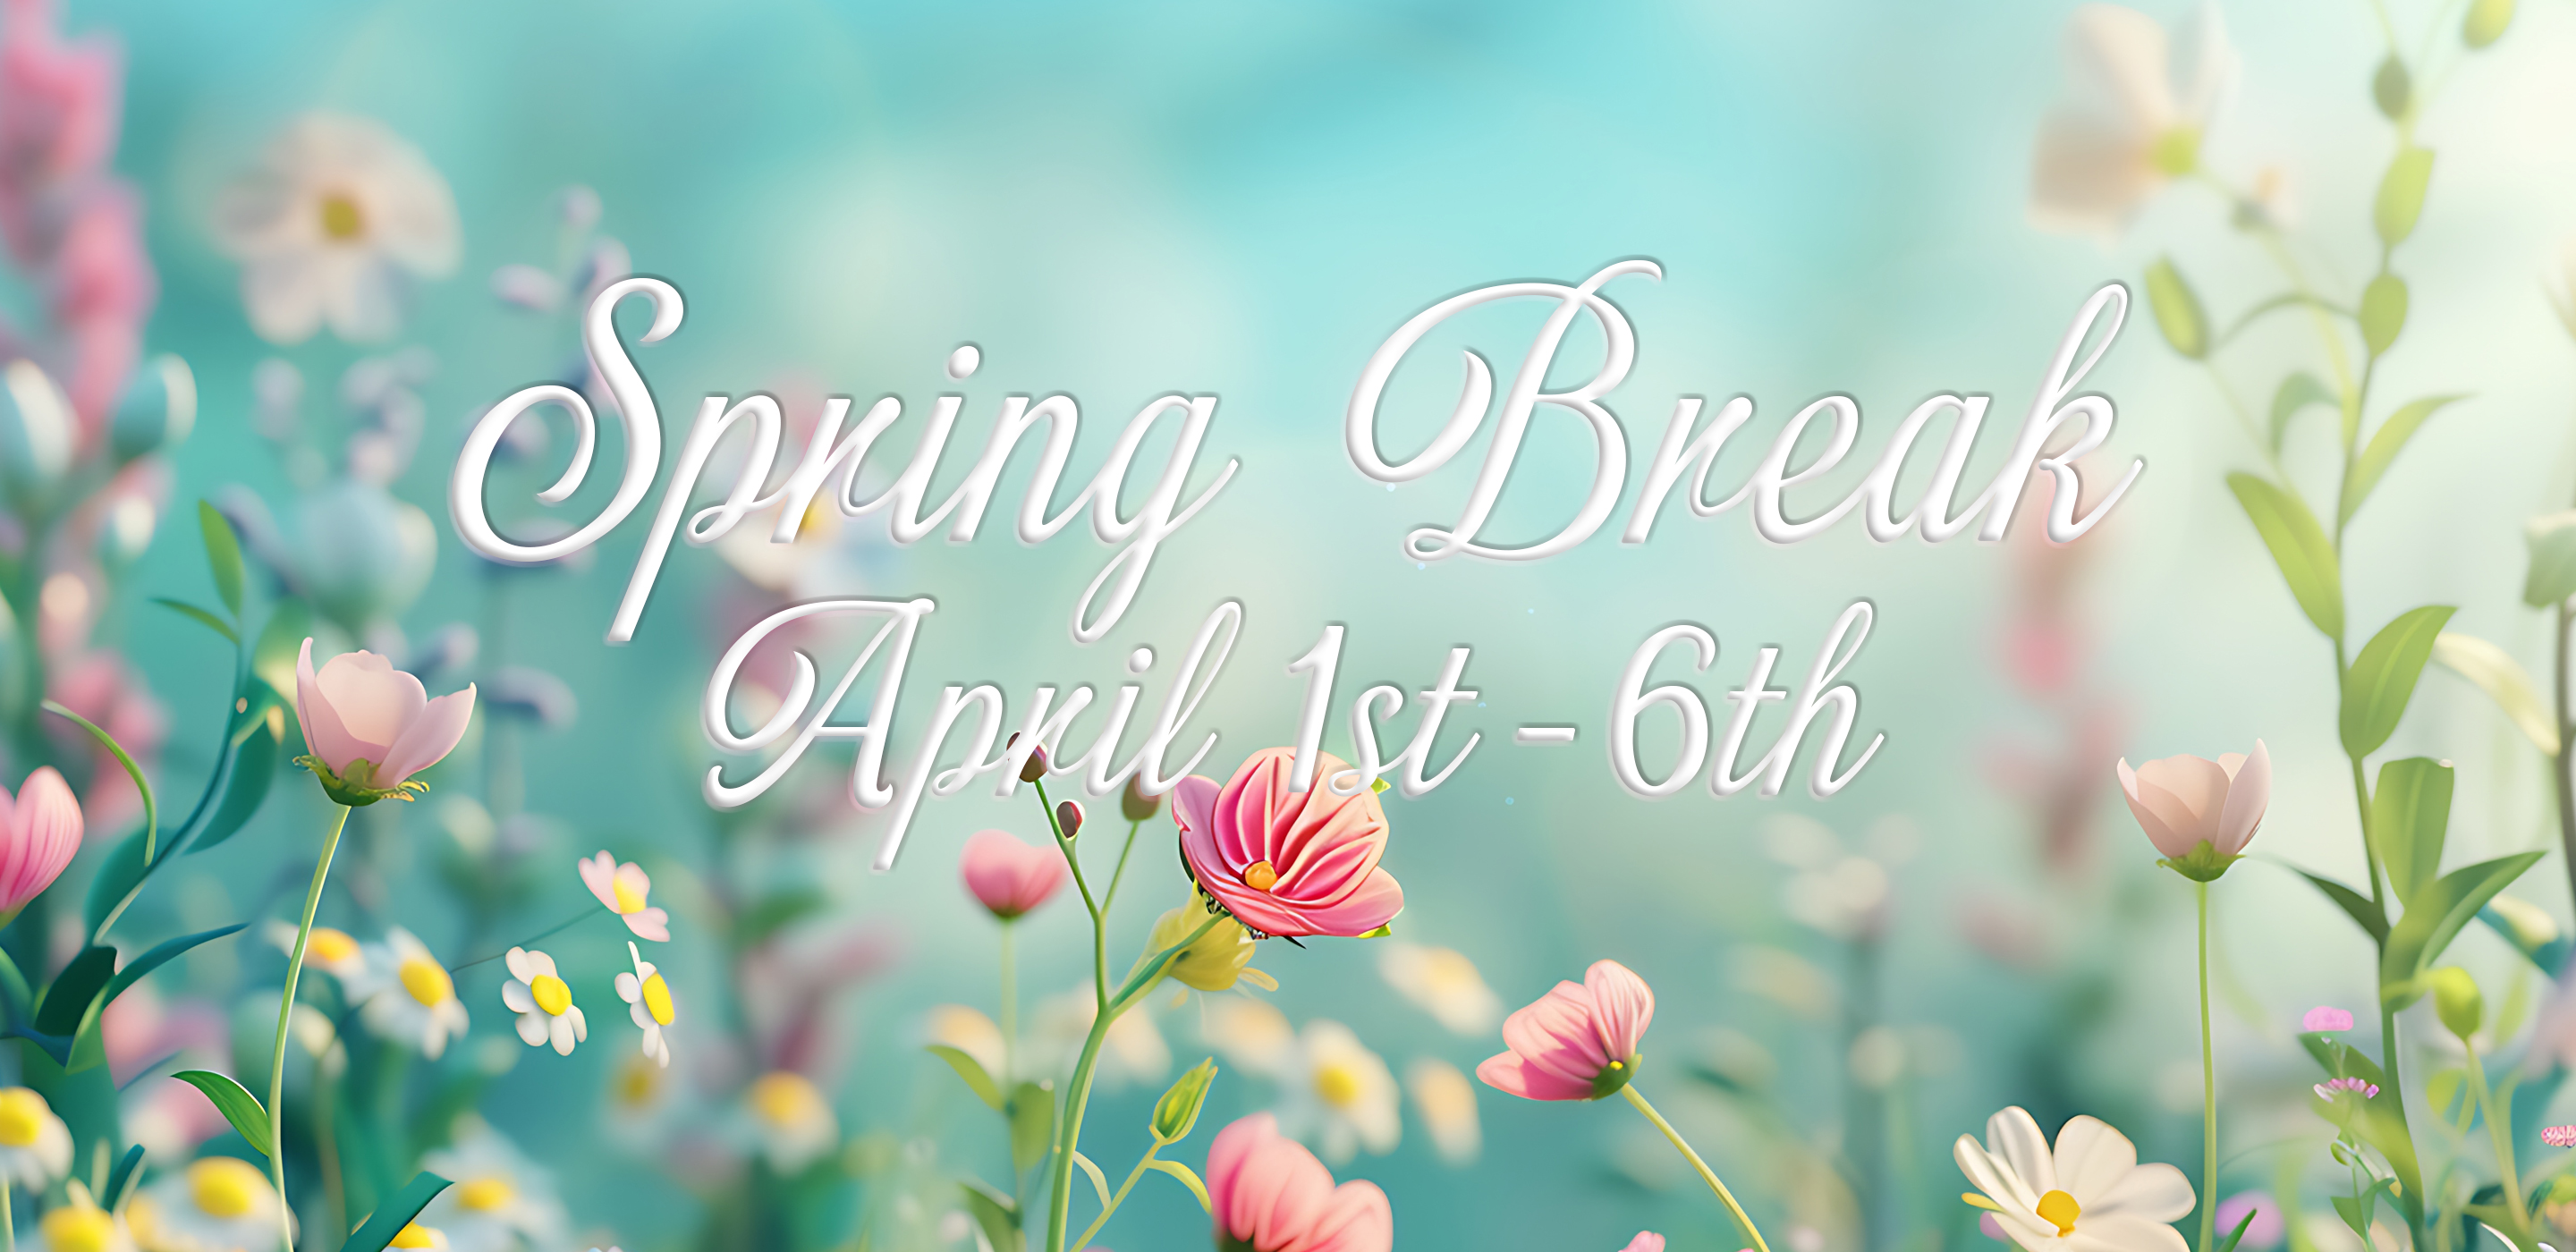 Spring Break April 1st - 6th